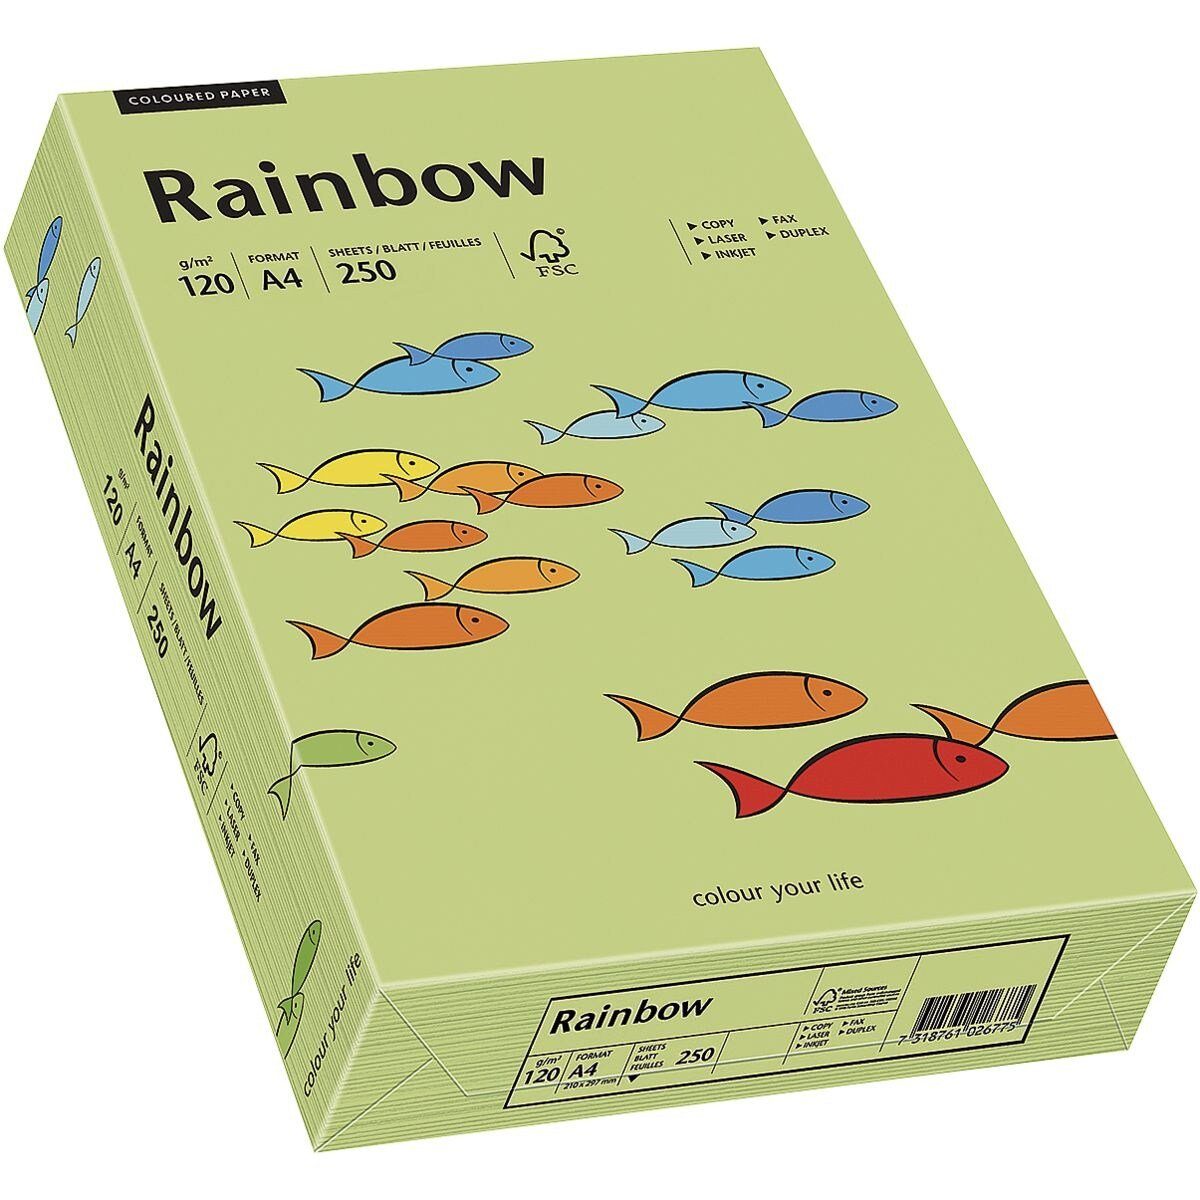 Inapa tecno Drucker- und Blatt Kopierpapier Rainbow DIN Intensivfarben, Format A4, g/m², Colors, tecno leuchtendgrün 250 / 120